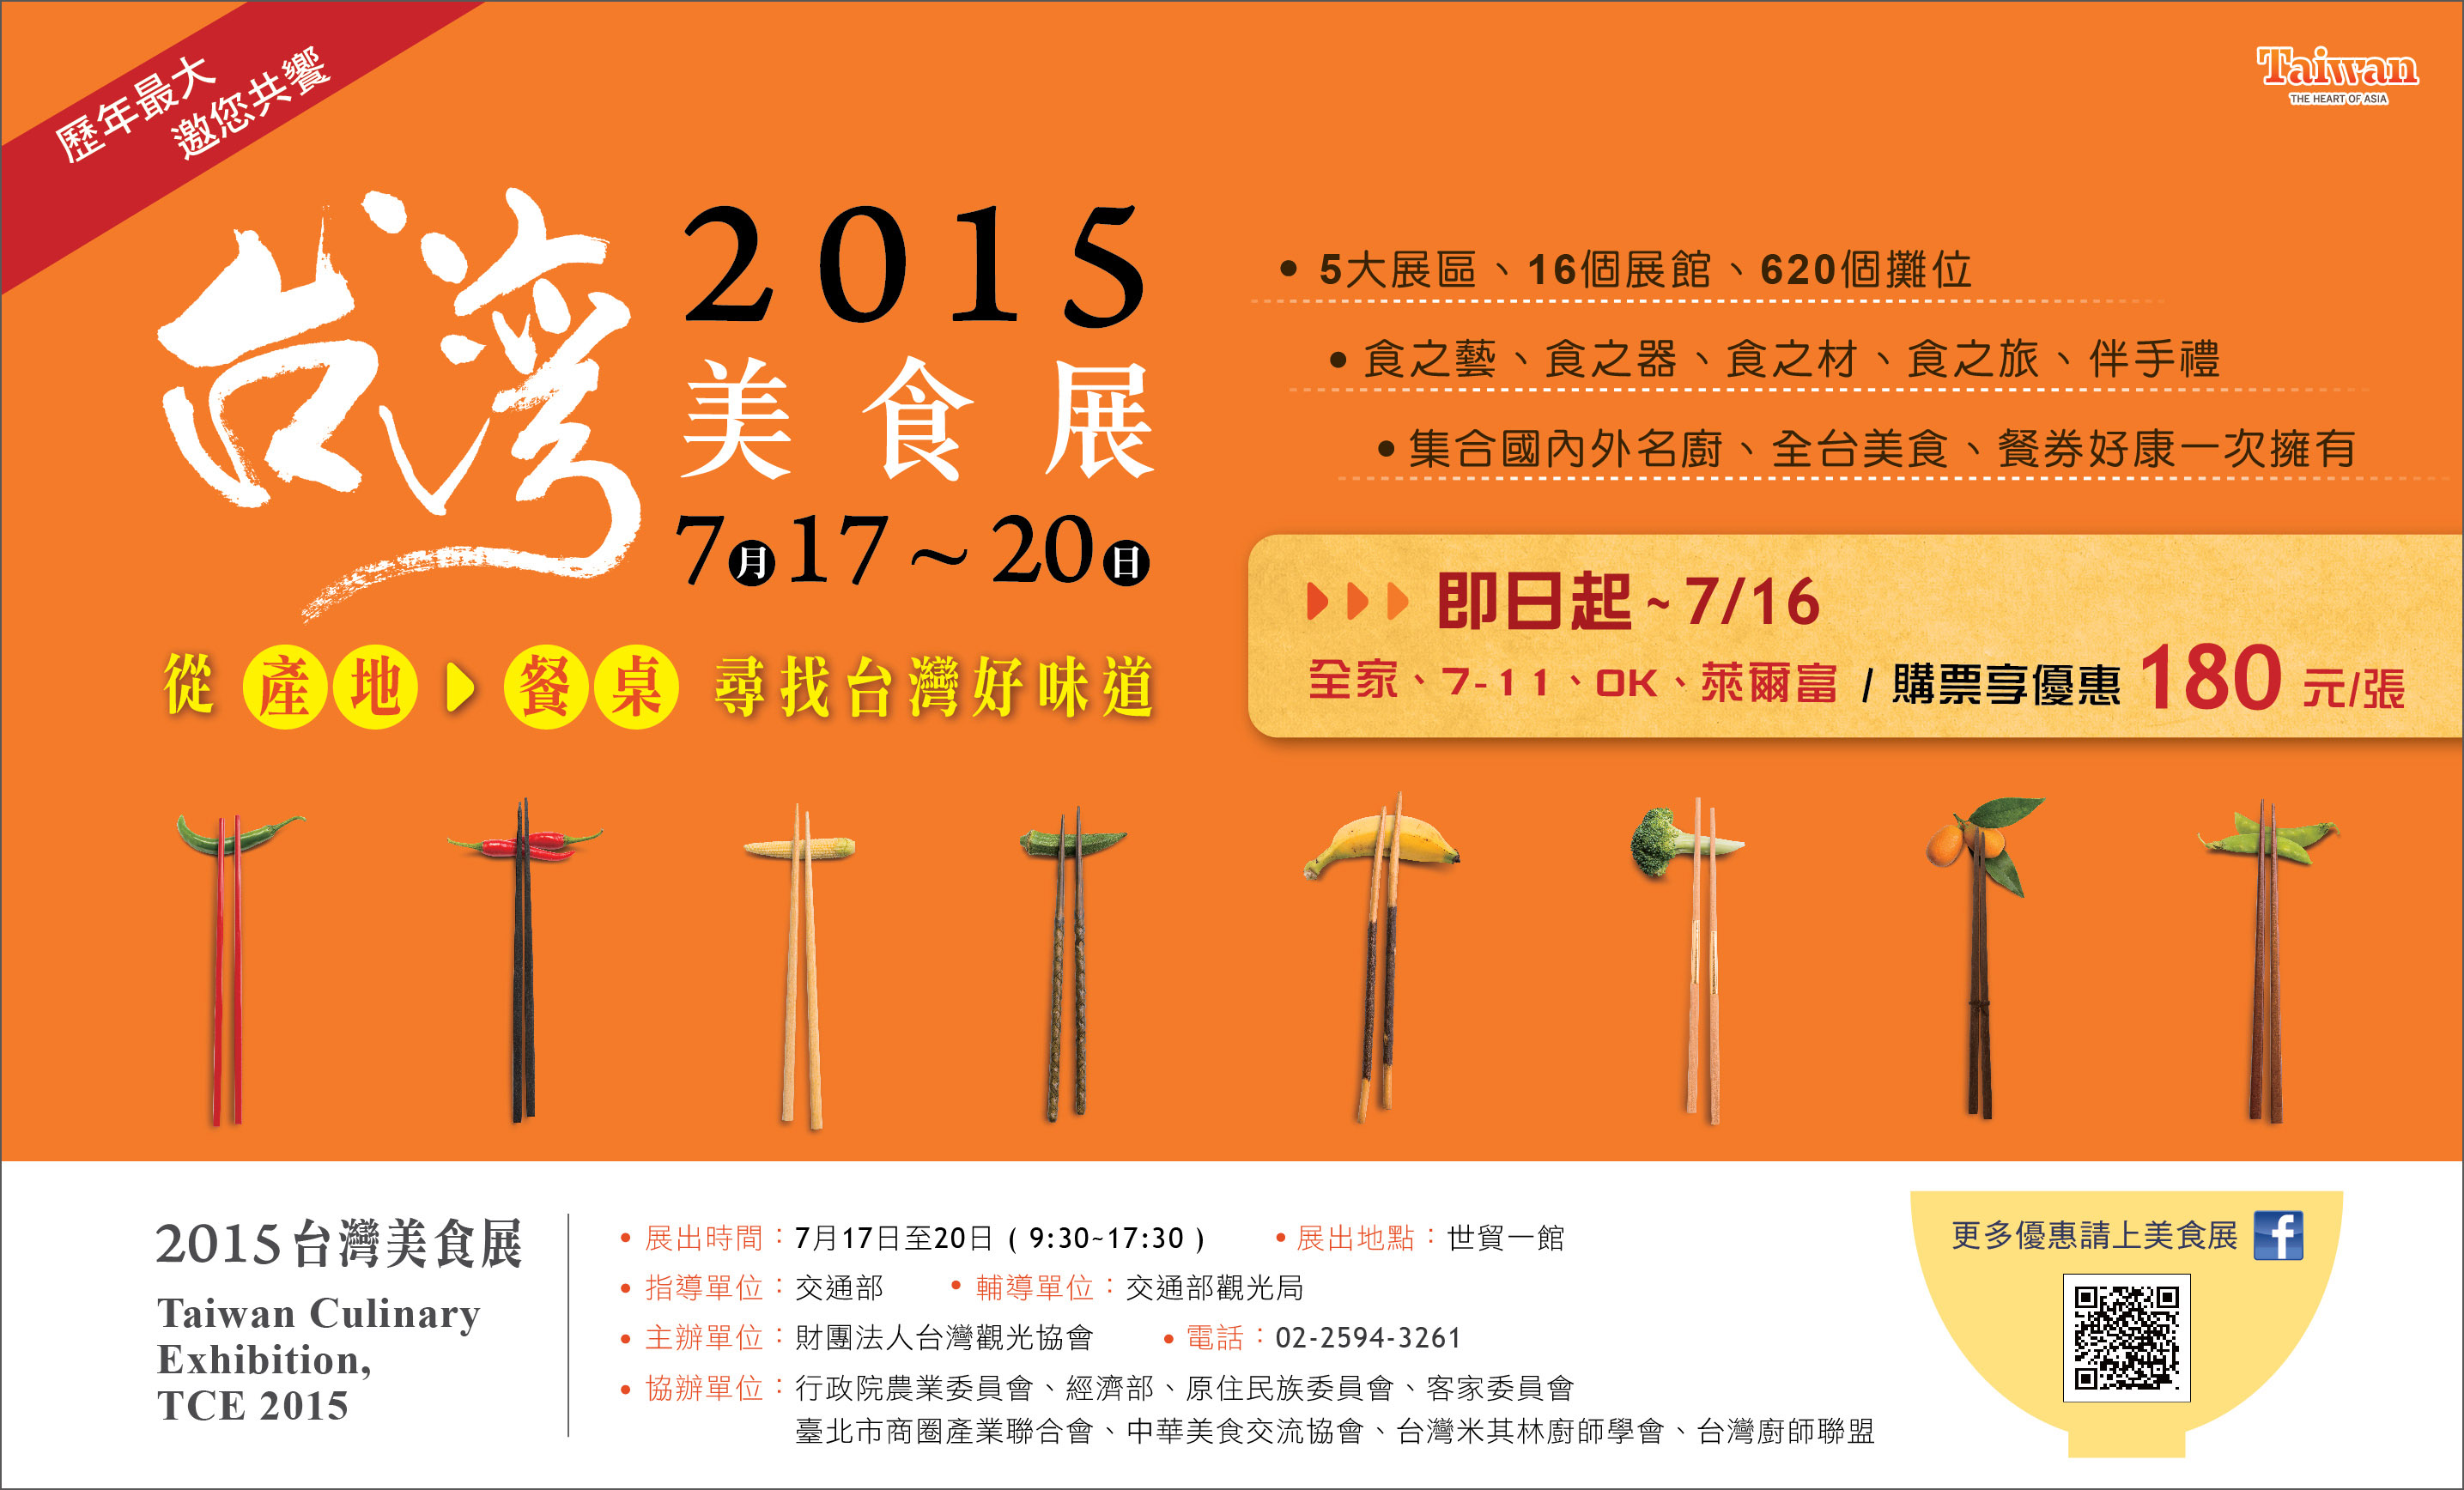 【 好康快報 】2015 TCE 台灣美食展 - 飯店餐券優惠彙整表